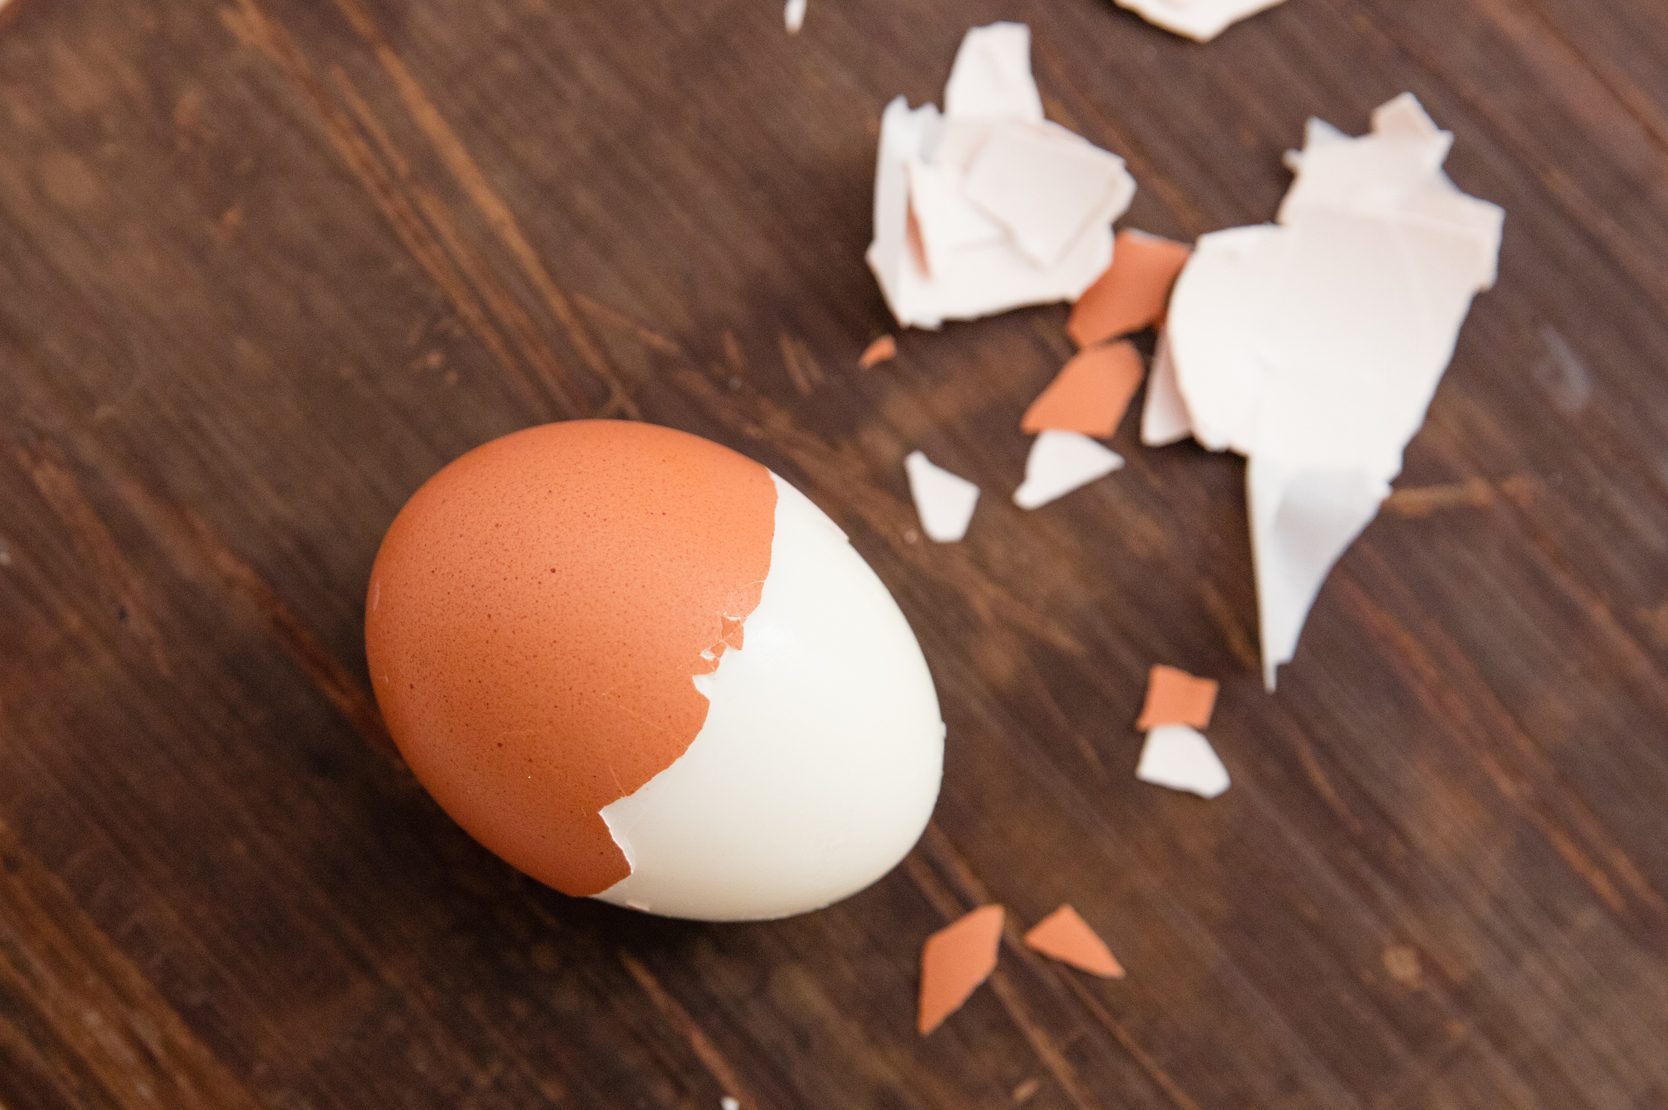  How Long Do Hard-Boiled Eggs Last in the Fridge? 